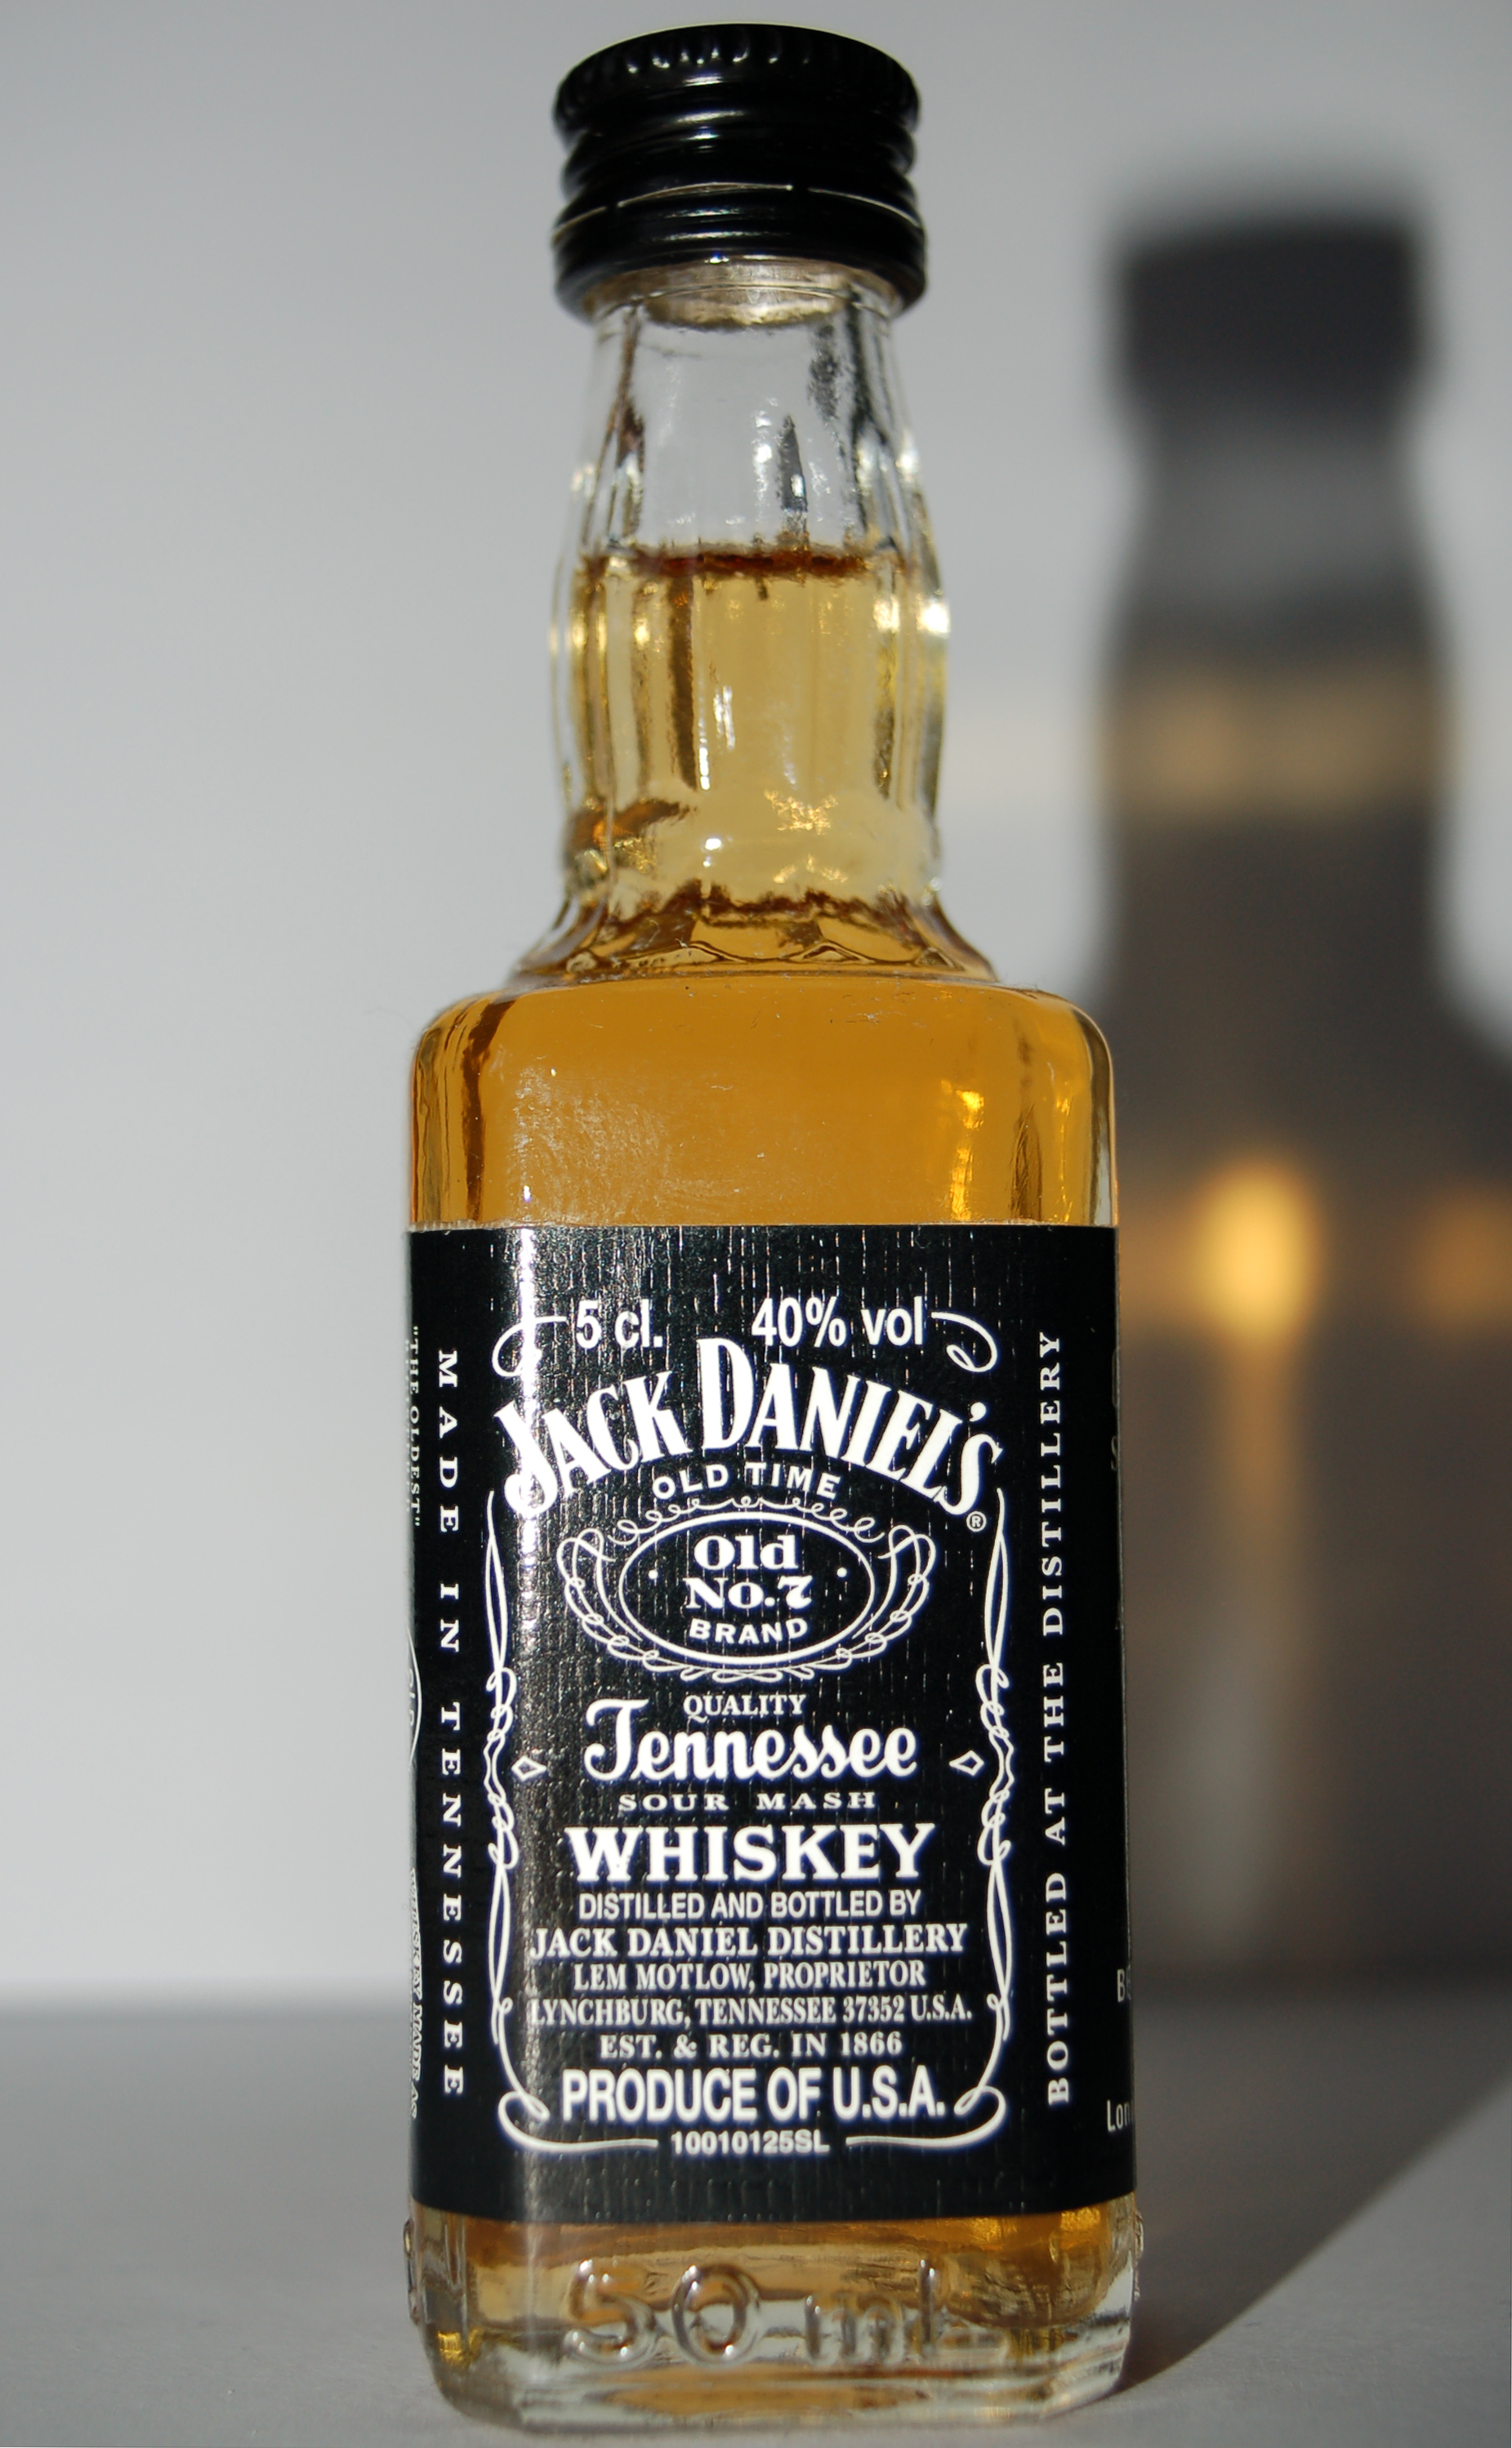 Wie heißt der Gründer von Jack Daniels?